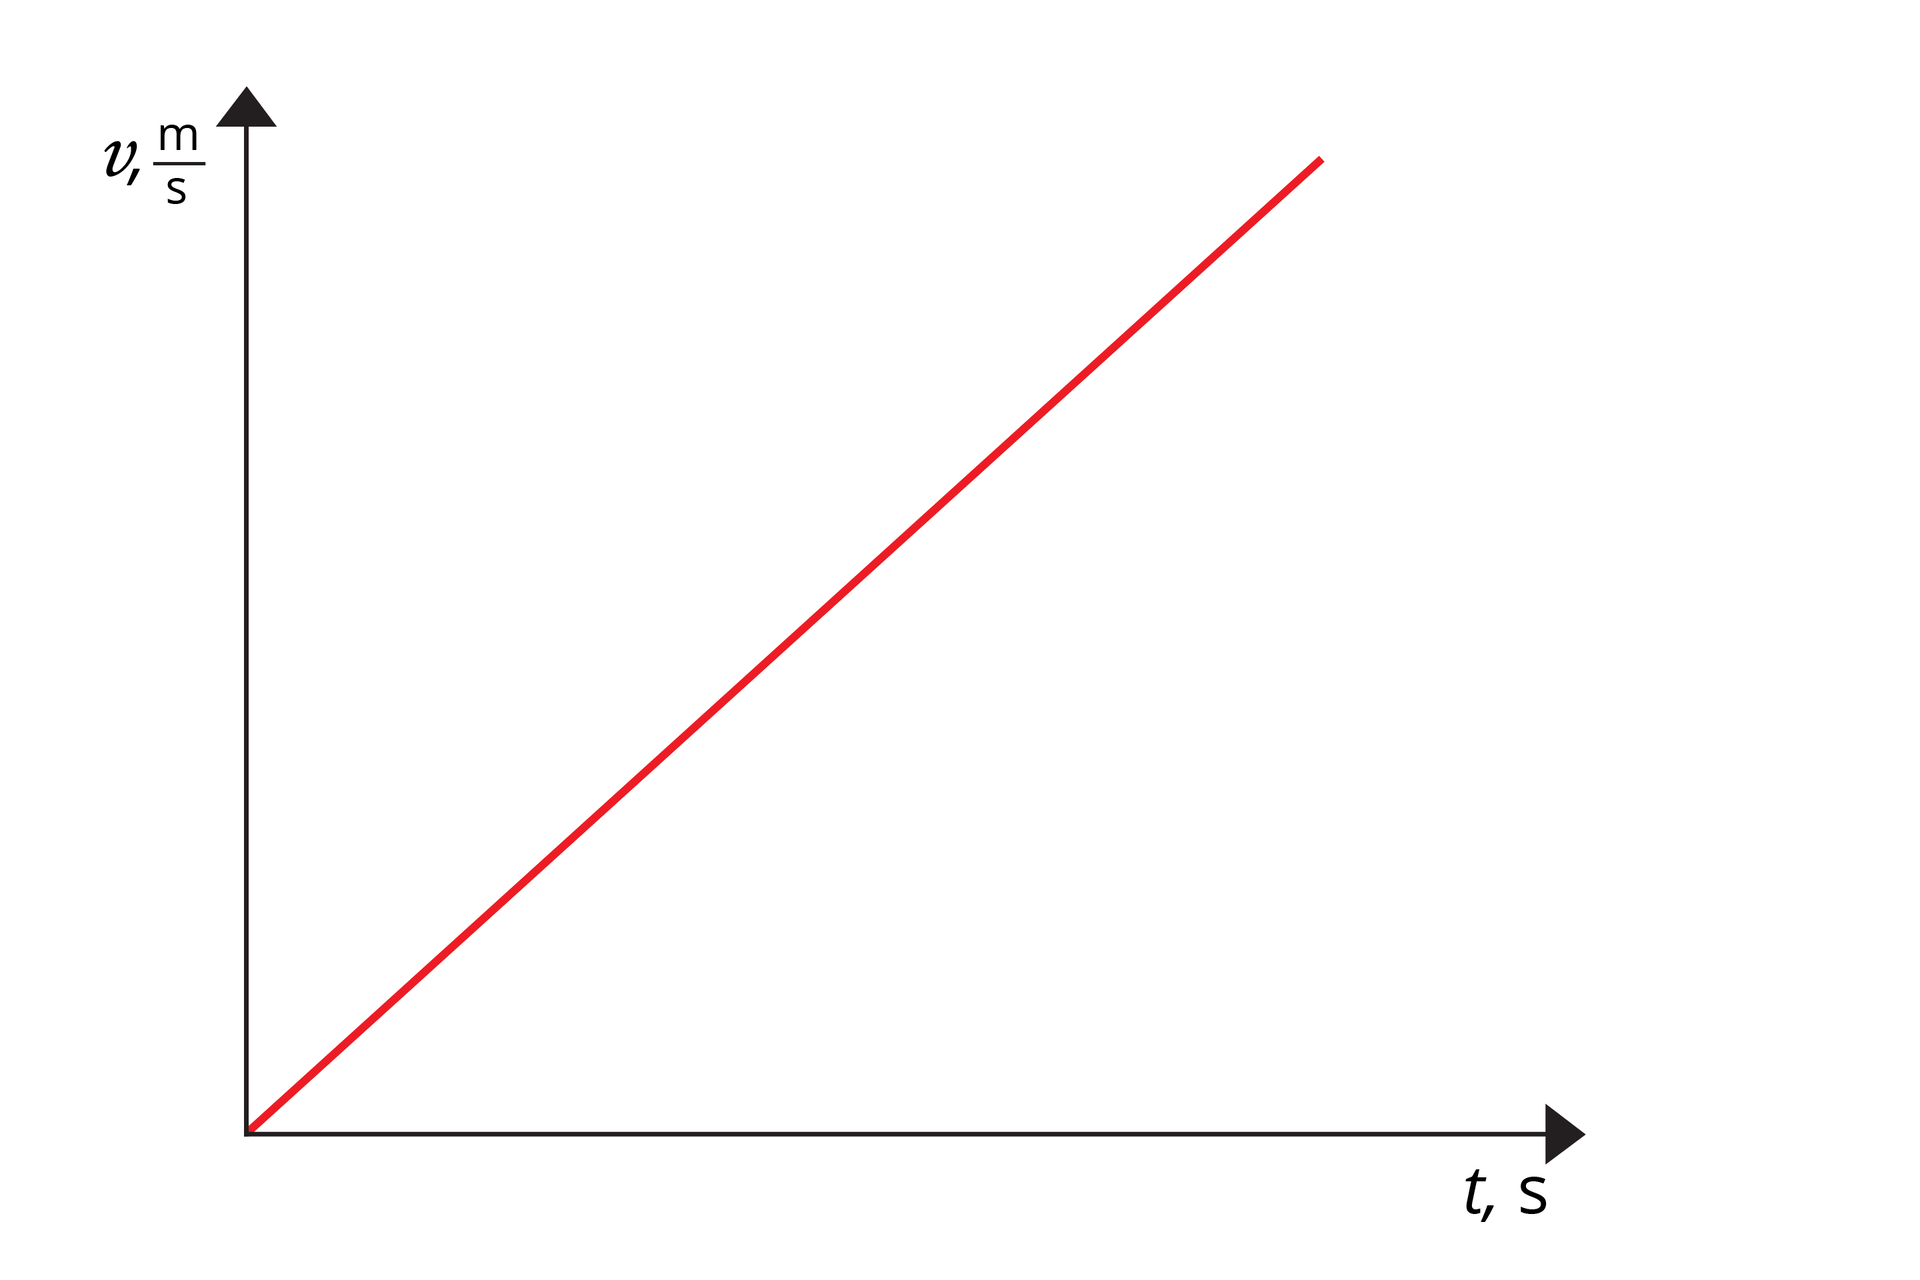 Schemat przedstawia wykres zależności prędkości od czasu. Oś odciętych opisana jako „t,s”. Oś rzędnych opisana jako „v, m/s”. Na wykresie widoczny czerwony odcinek. Początek w początku układu współrzędnych. Odcinek leży względem osi odciętych pod kątem ok. 45 stopni.